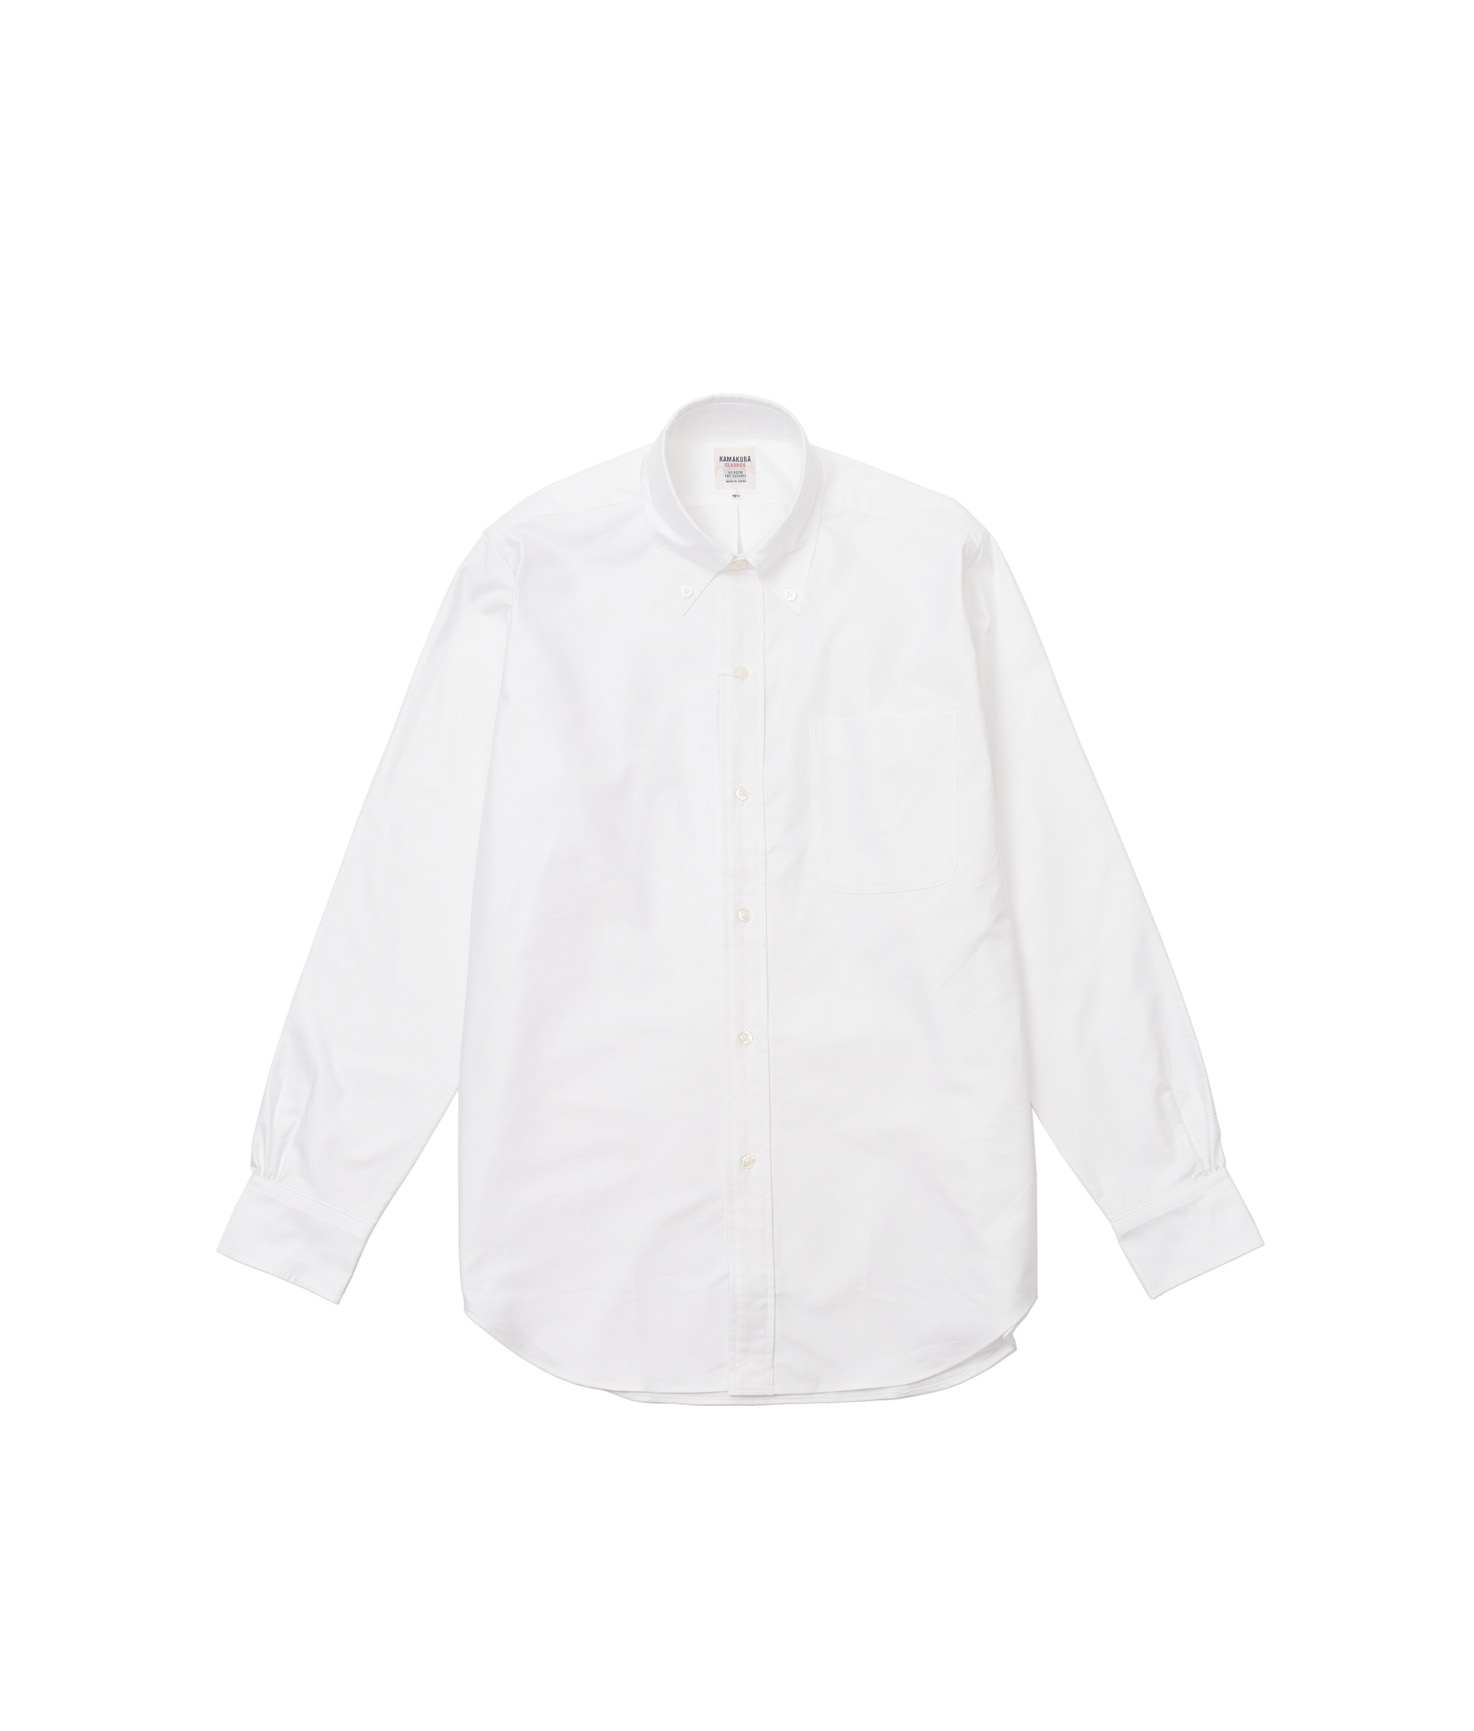 Ametora Button Down Oxford Shirts White